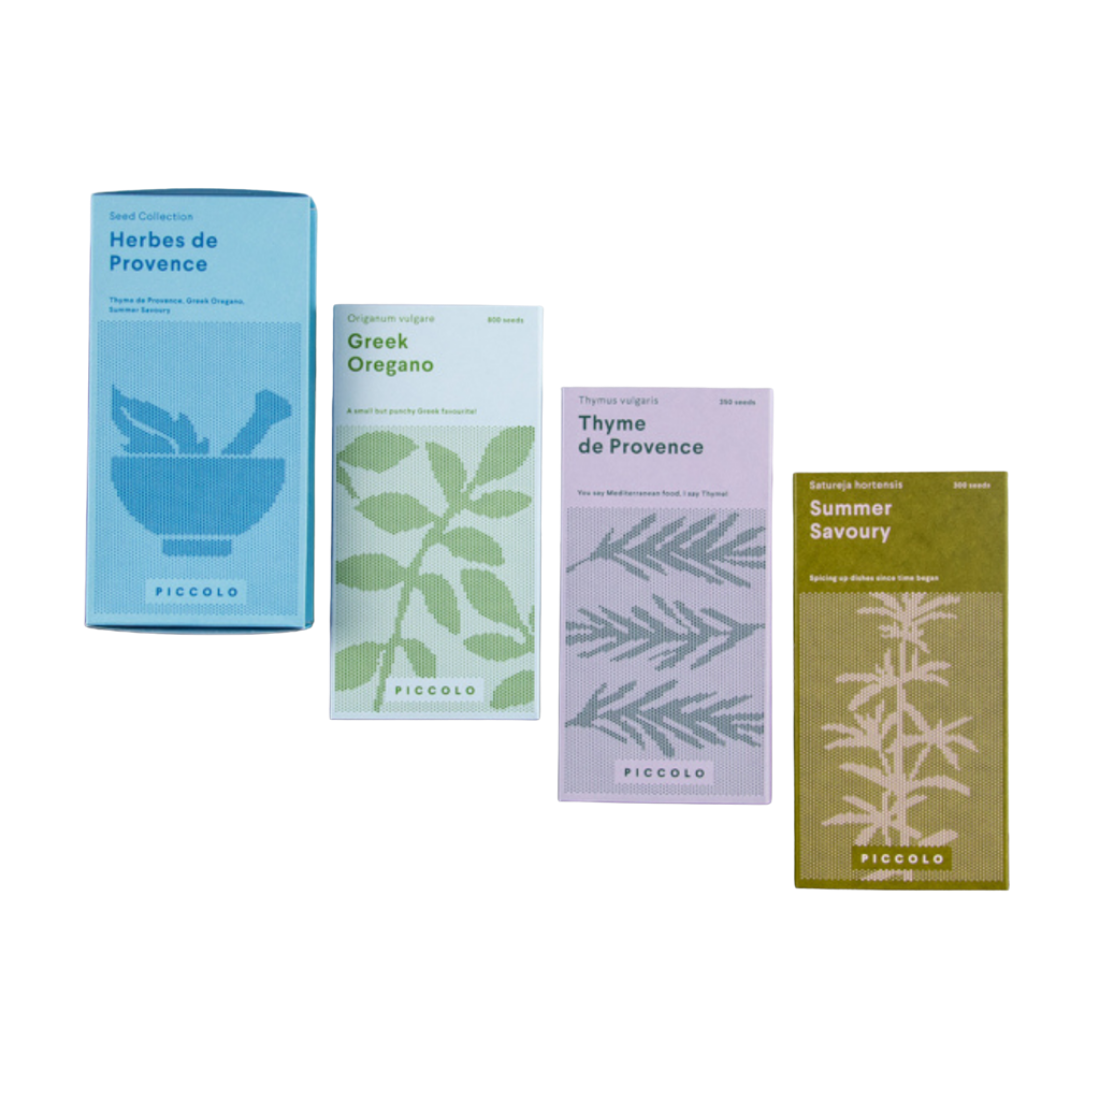 Se Piccolo Seeds Collection Herbes De Provence - Frø hos Veras Verden